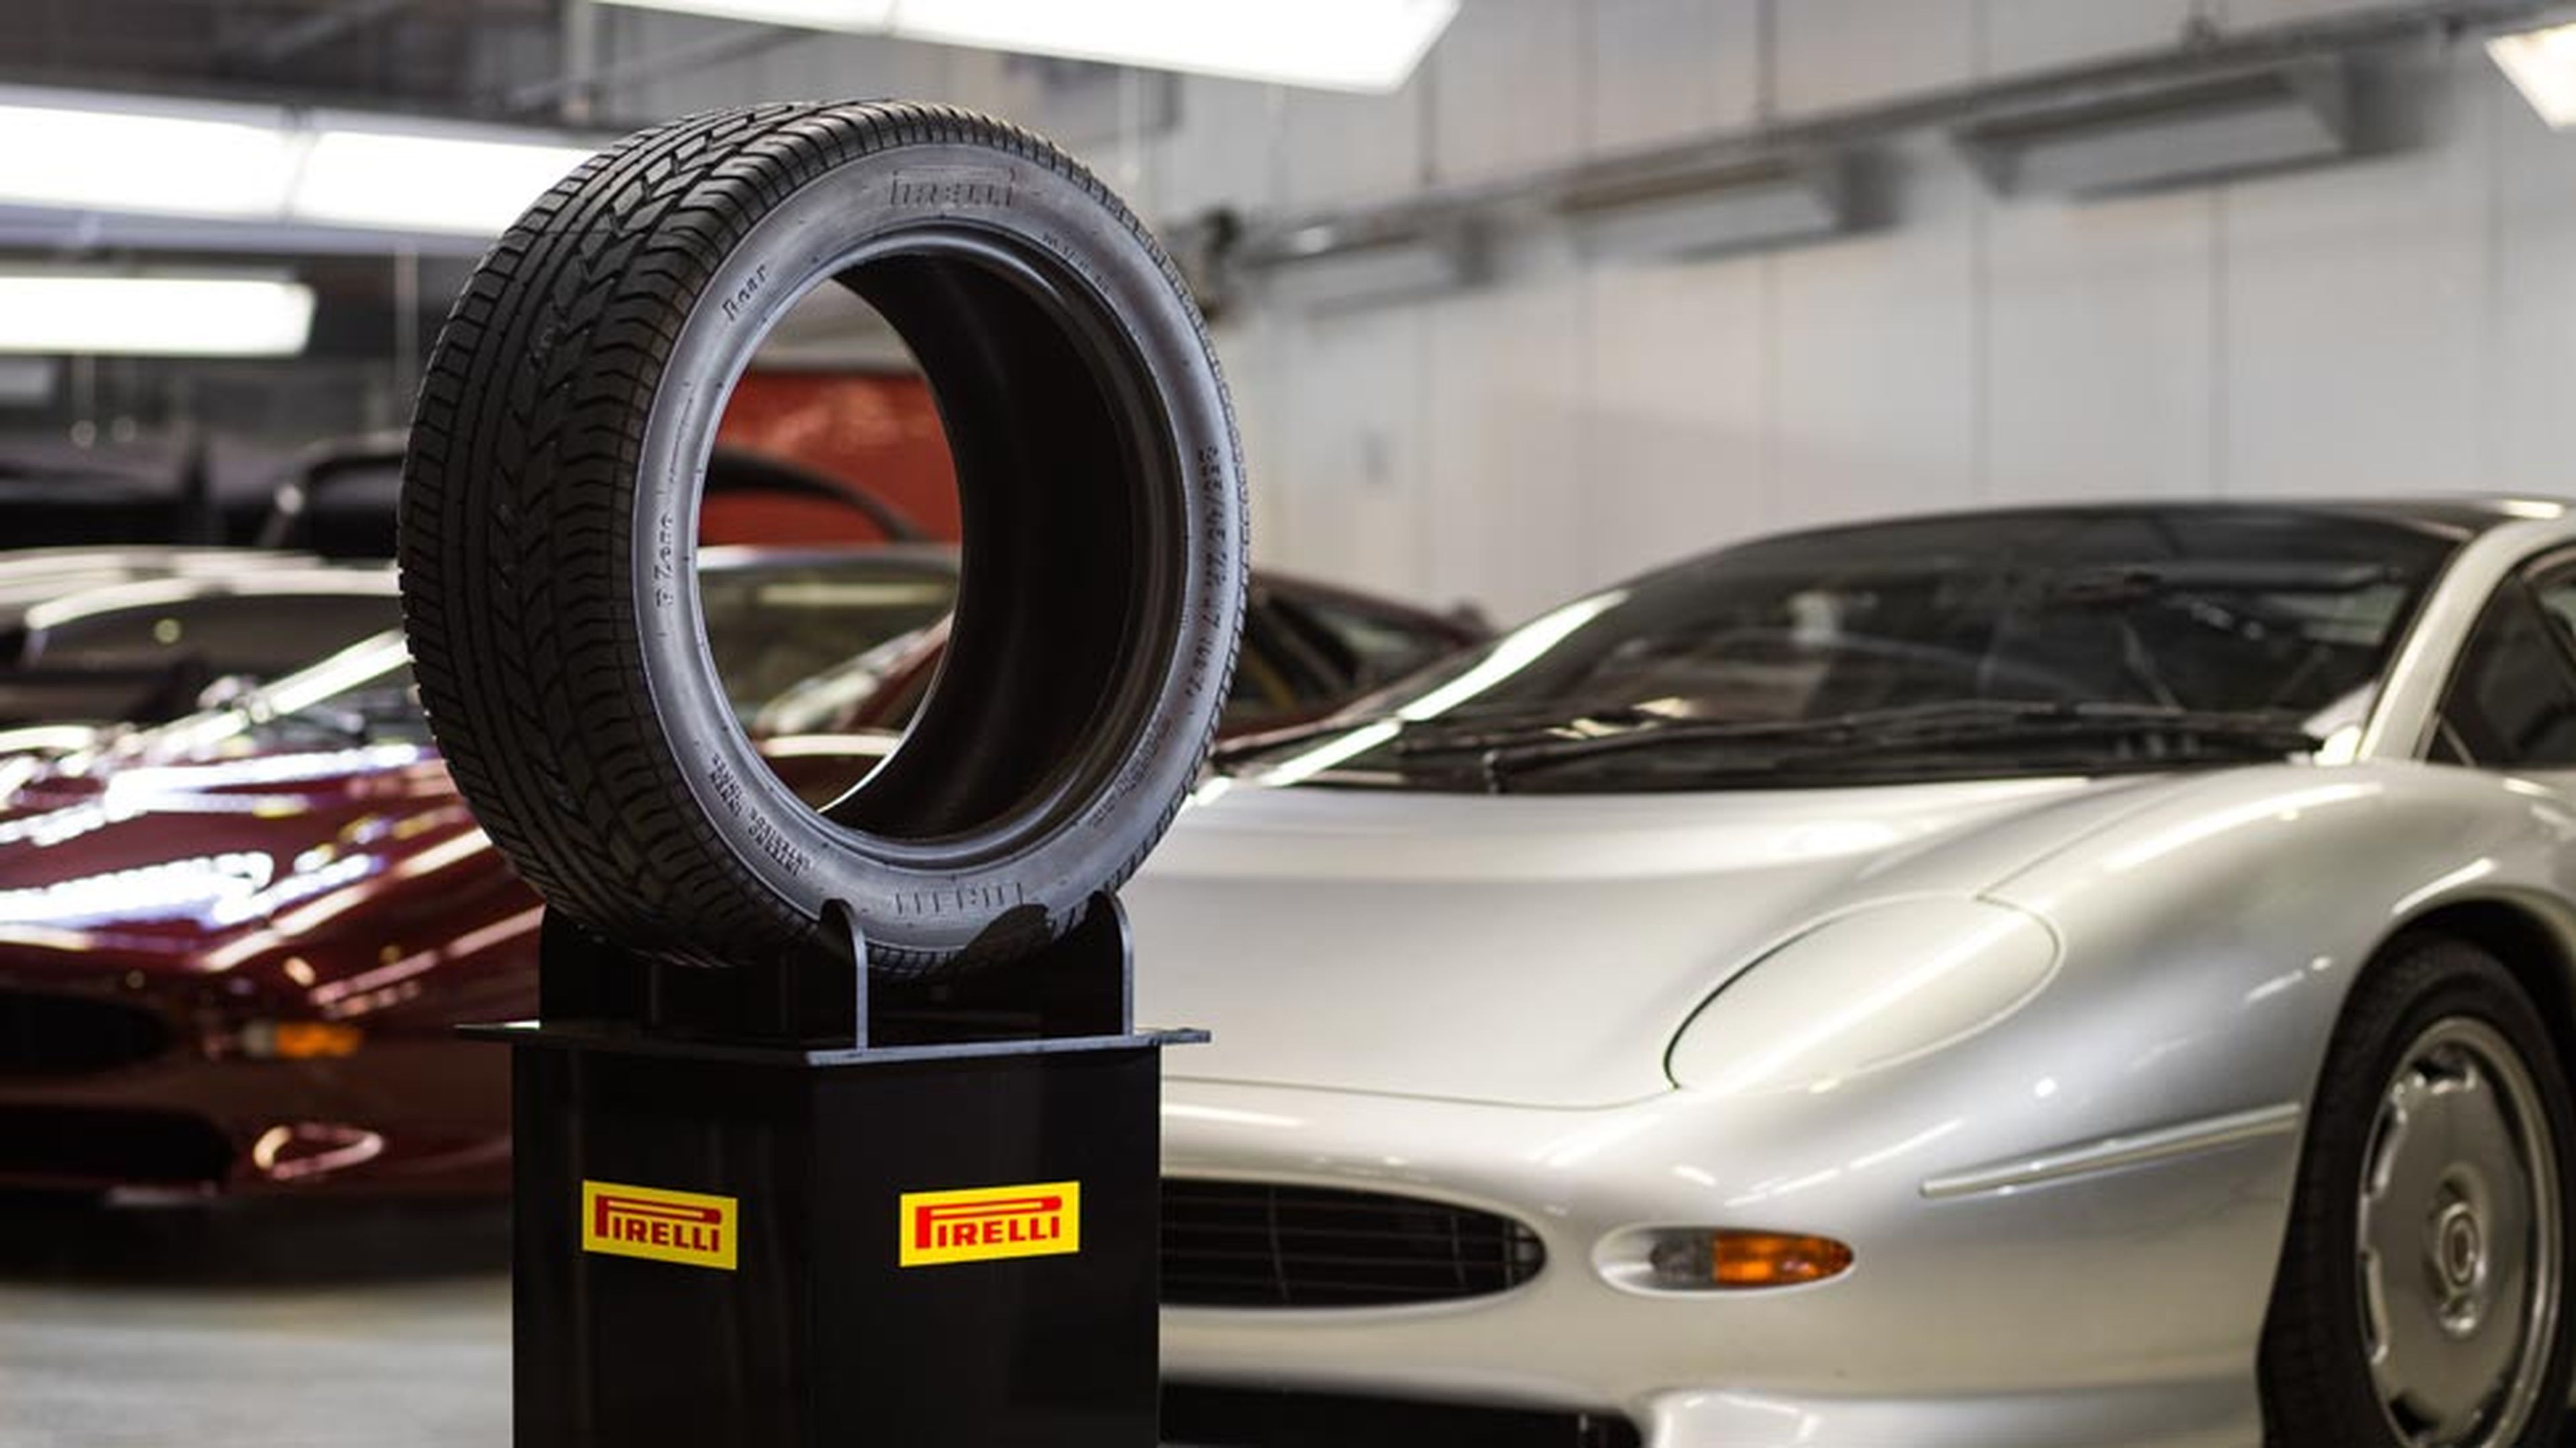 Neumático Pirelli Jaguar XJ220